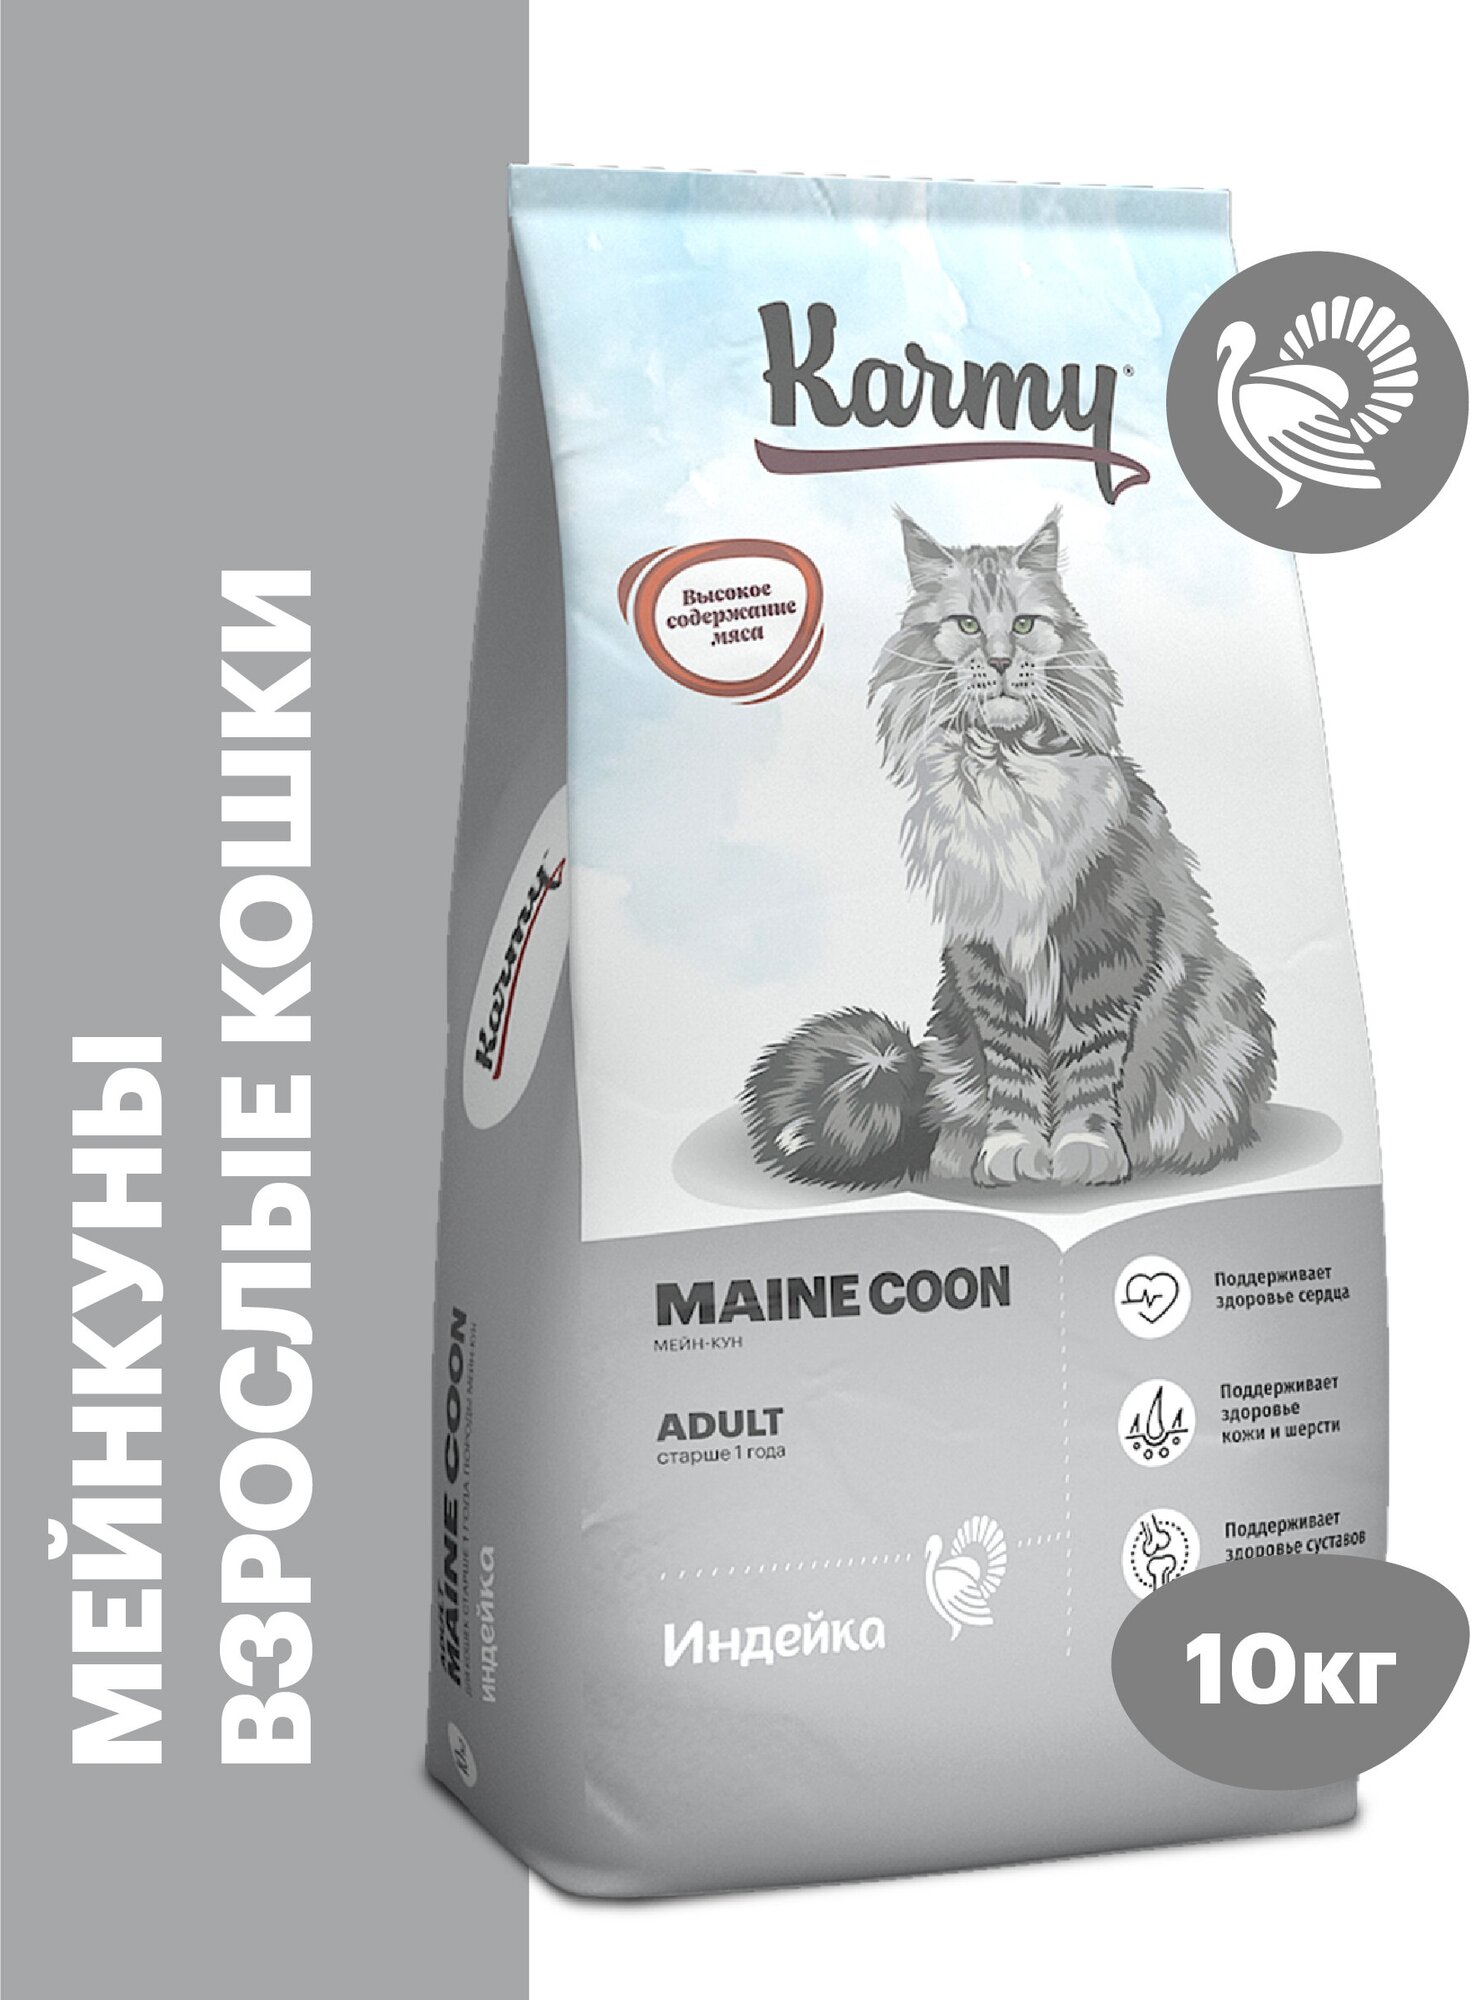 Сухой корм KARMY Maine Coon для взрослых кошек старше 1 года Индейка 10кг